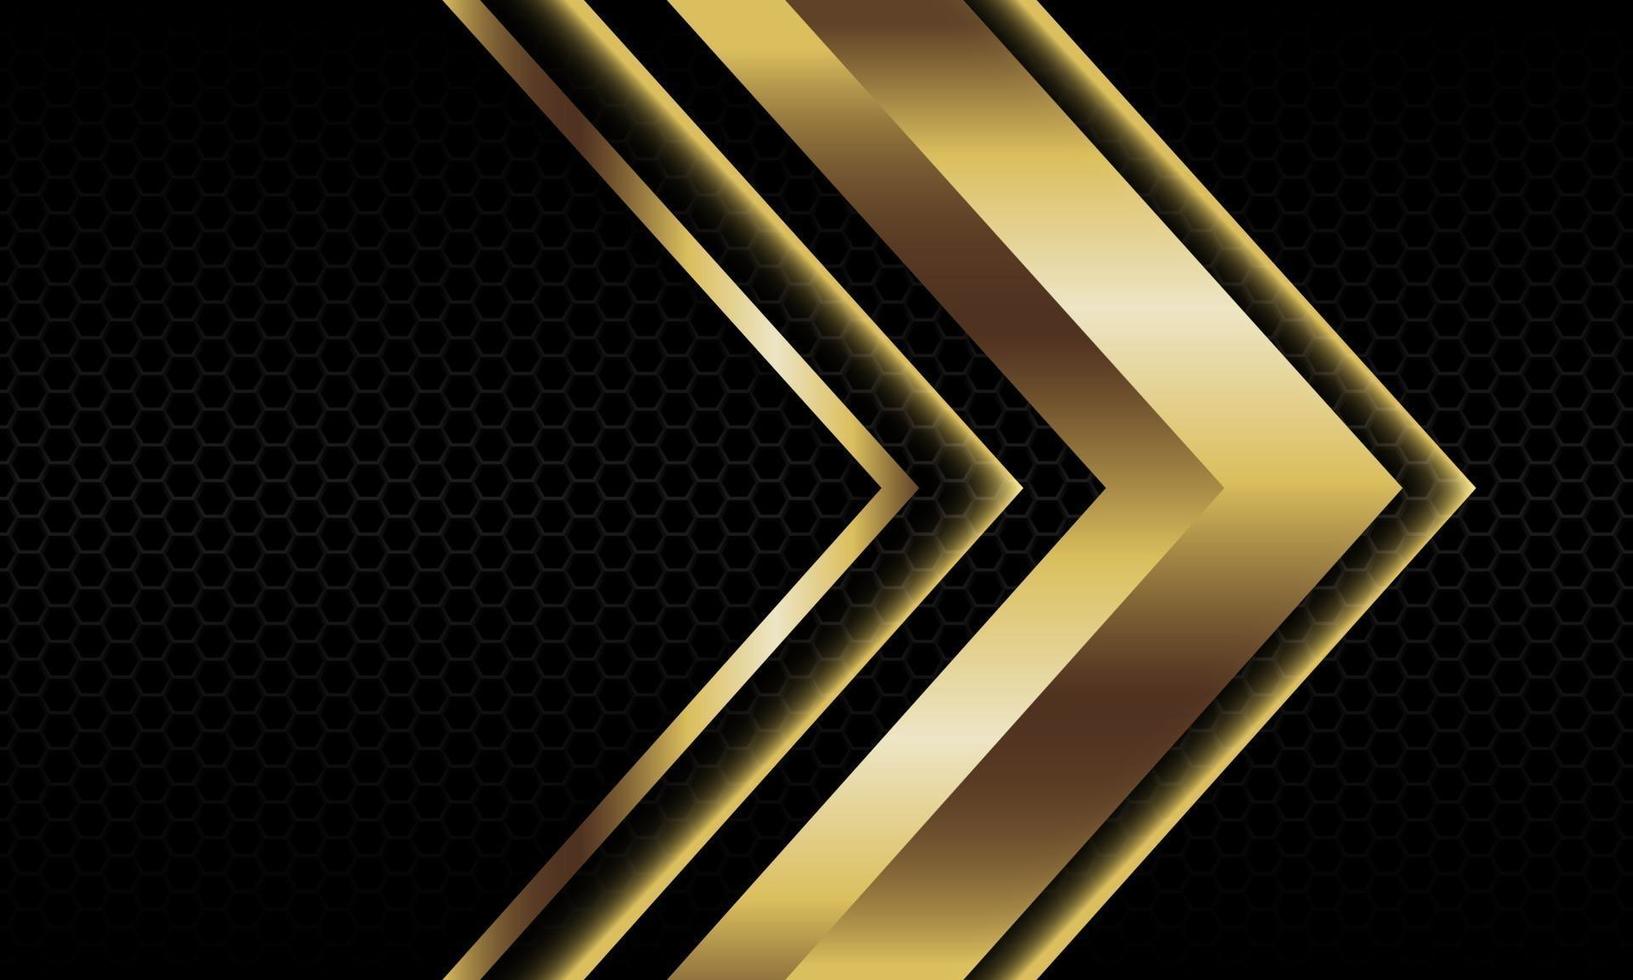 la direzione metallica astratta dell'ombra della freccia dell'oro geometrico sulla progettazione nera del modello della maglia di esagono vector l'illustrazione futuristica di vettore del fondo di lusso moderno.